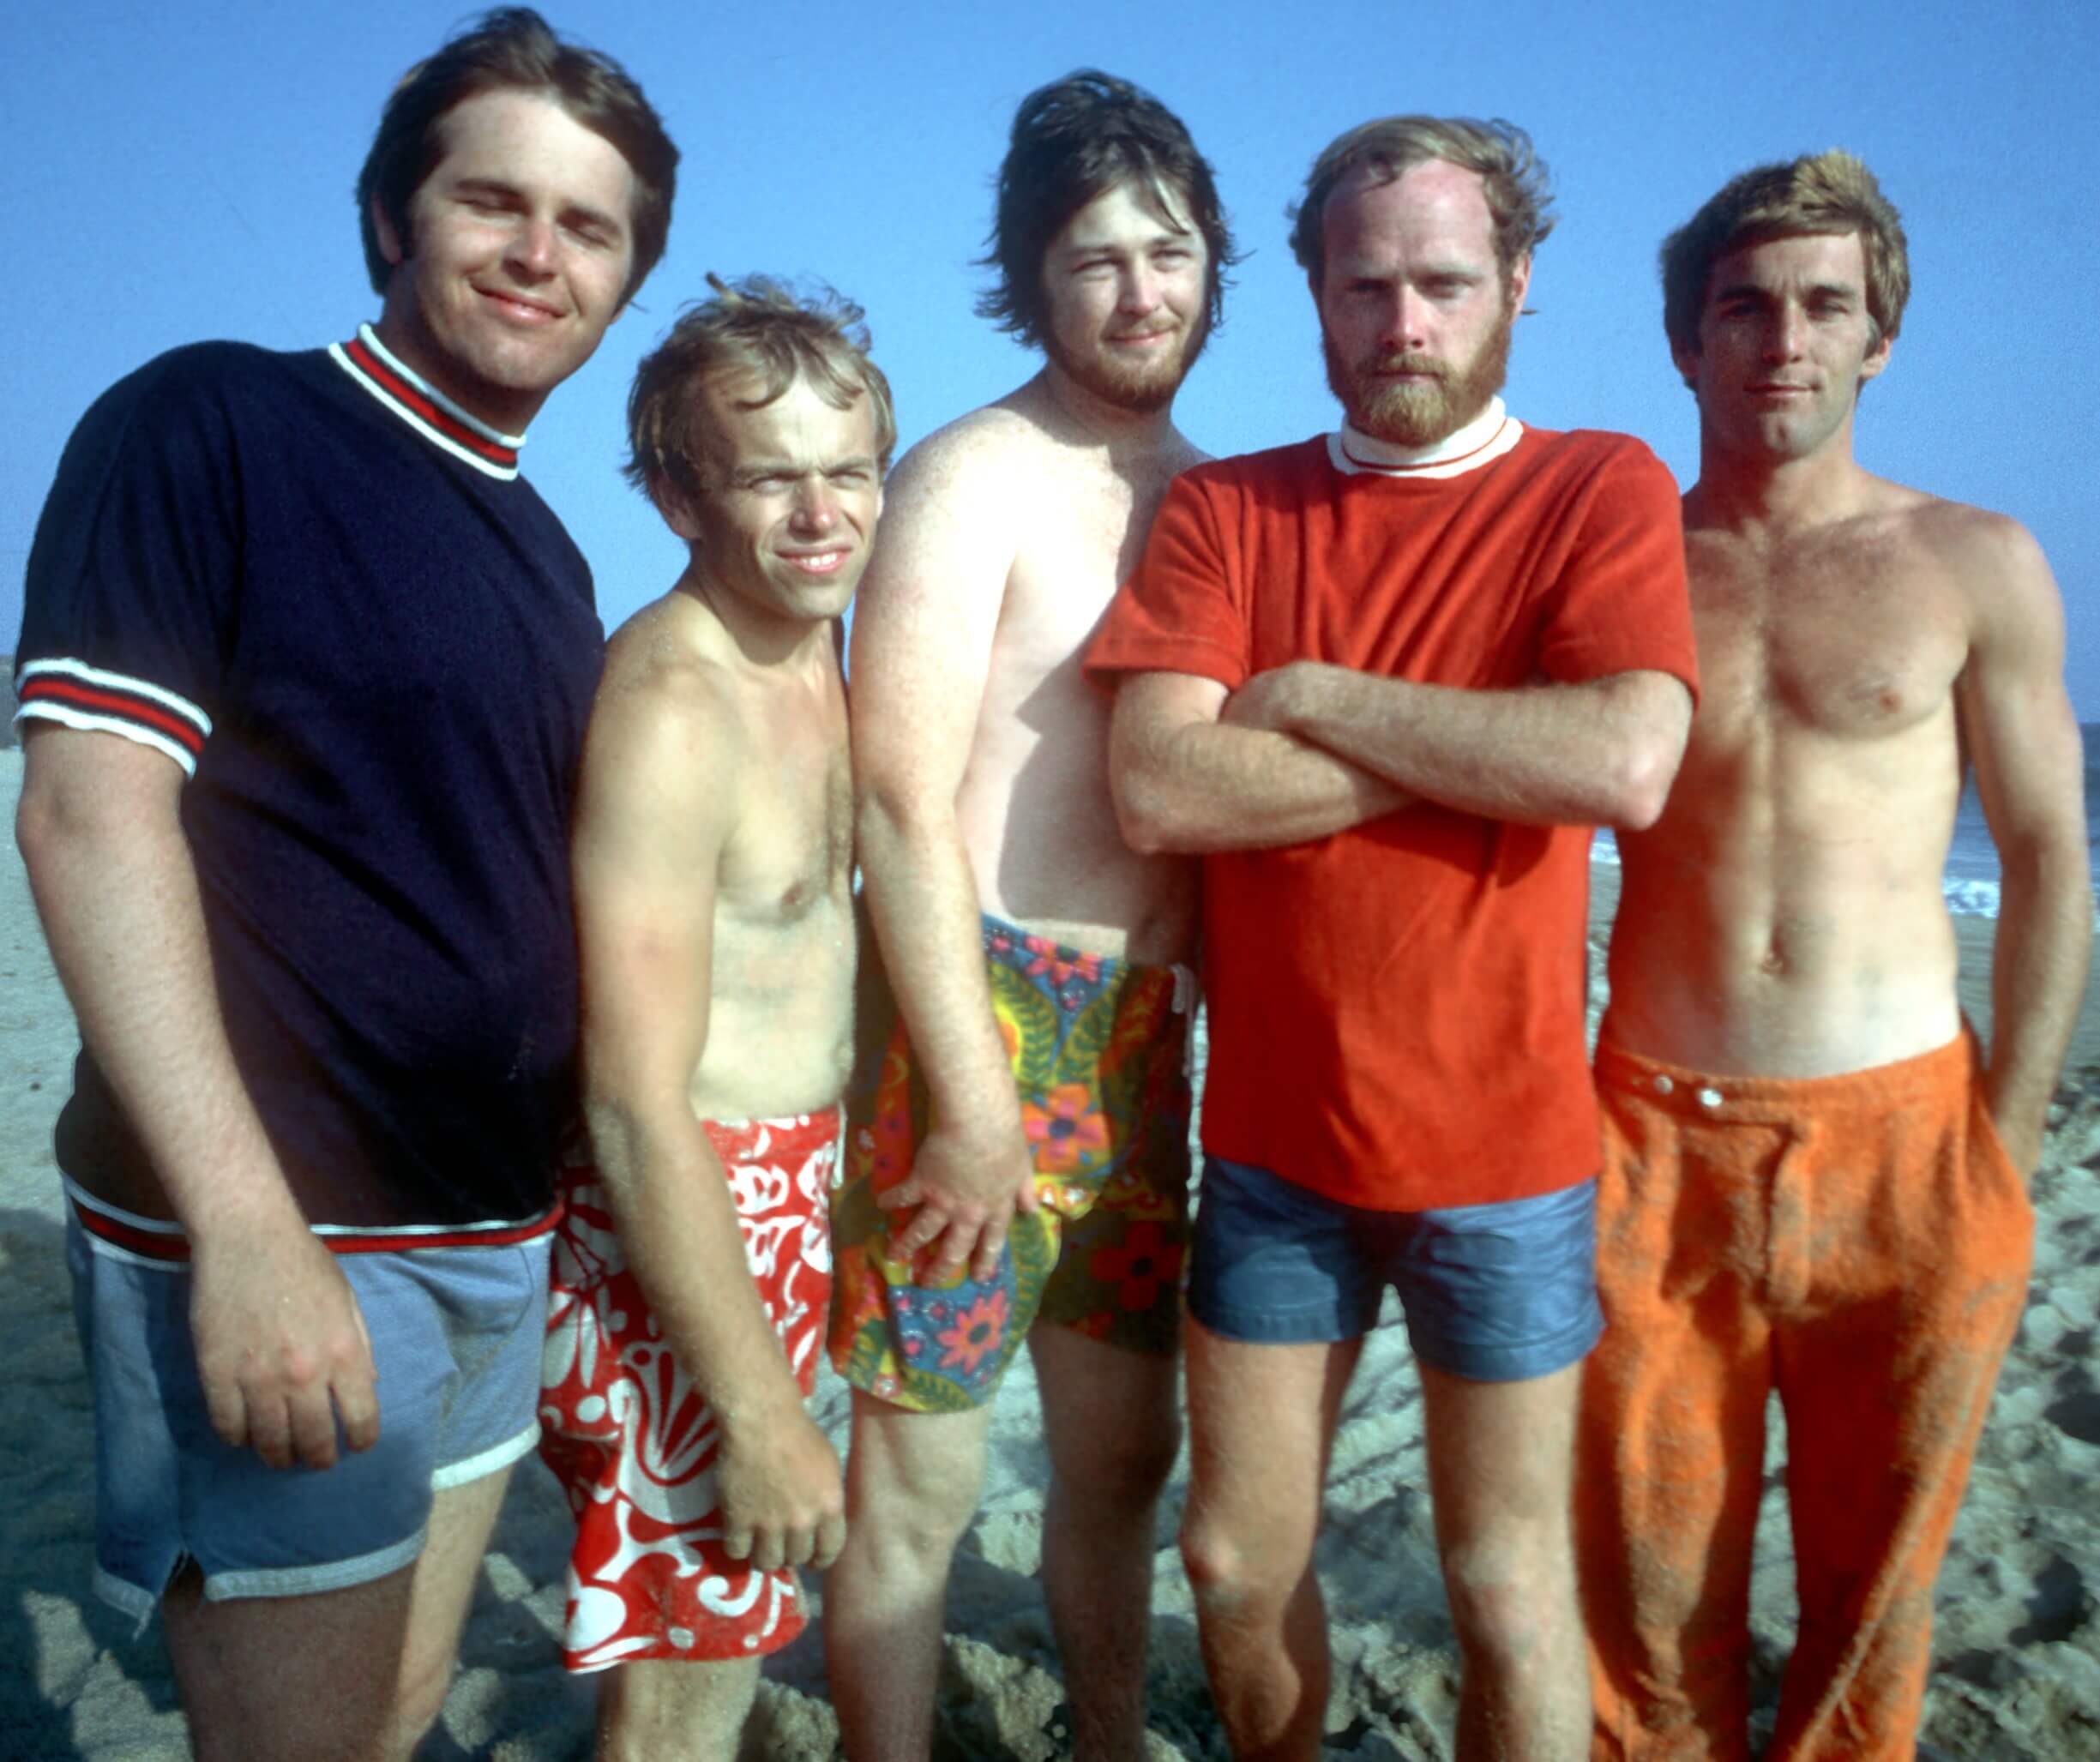 The Beach Boys on a beach